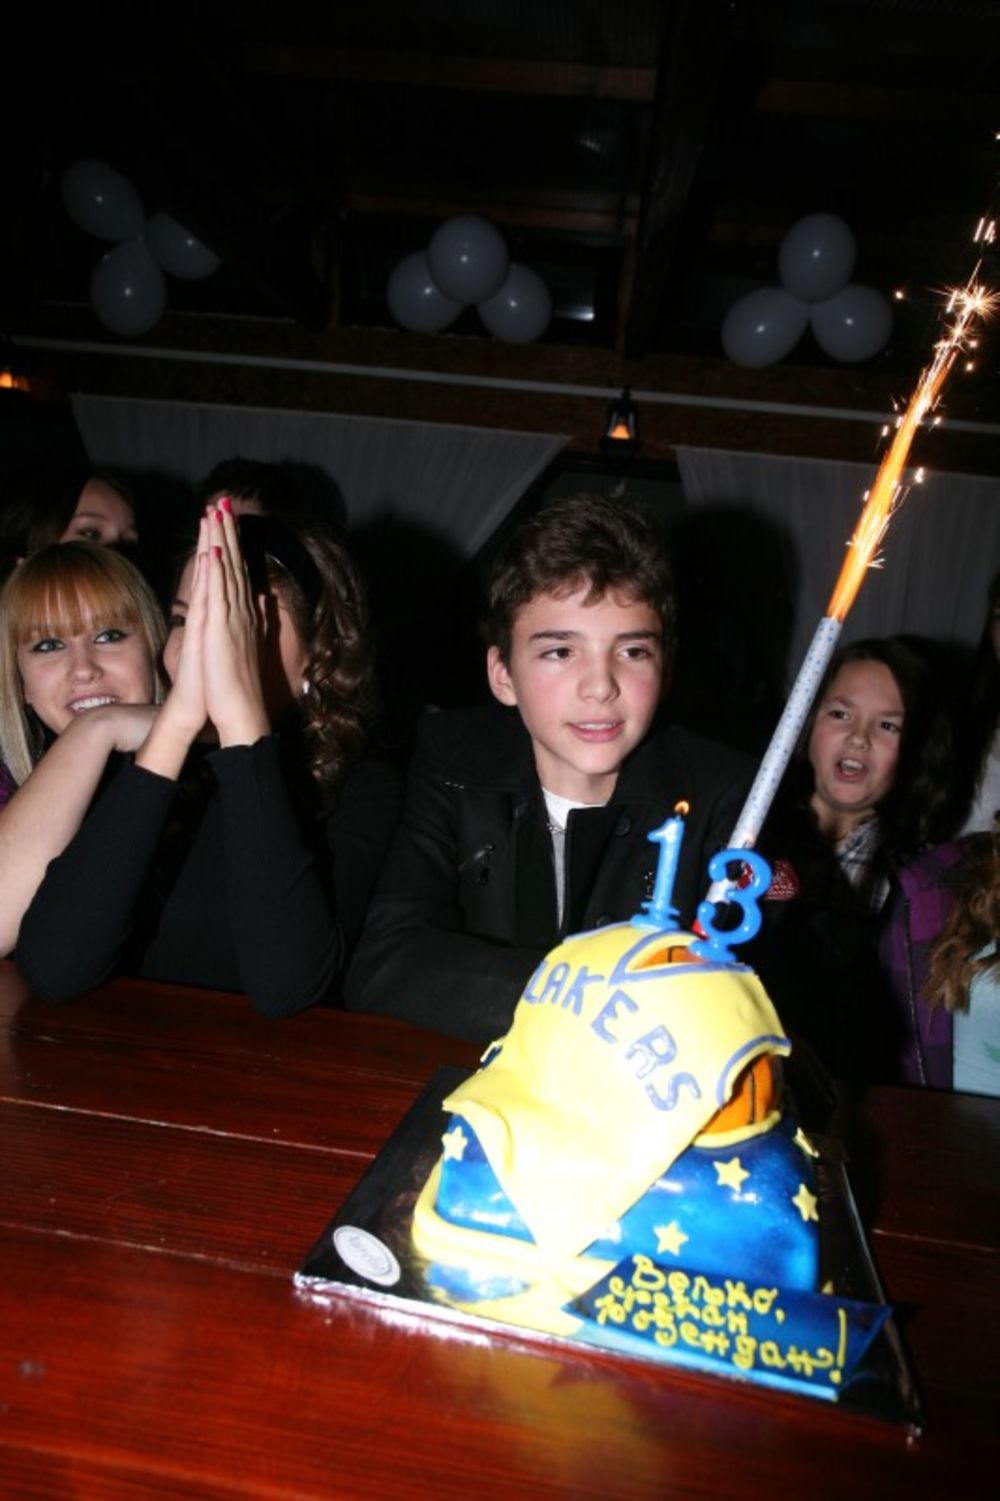 Sin folk dive Svetlane Cece Ražnatović, Veljko, proslavio je u petak svoj trinaesti rođendan u klubu Santo Domingo.